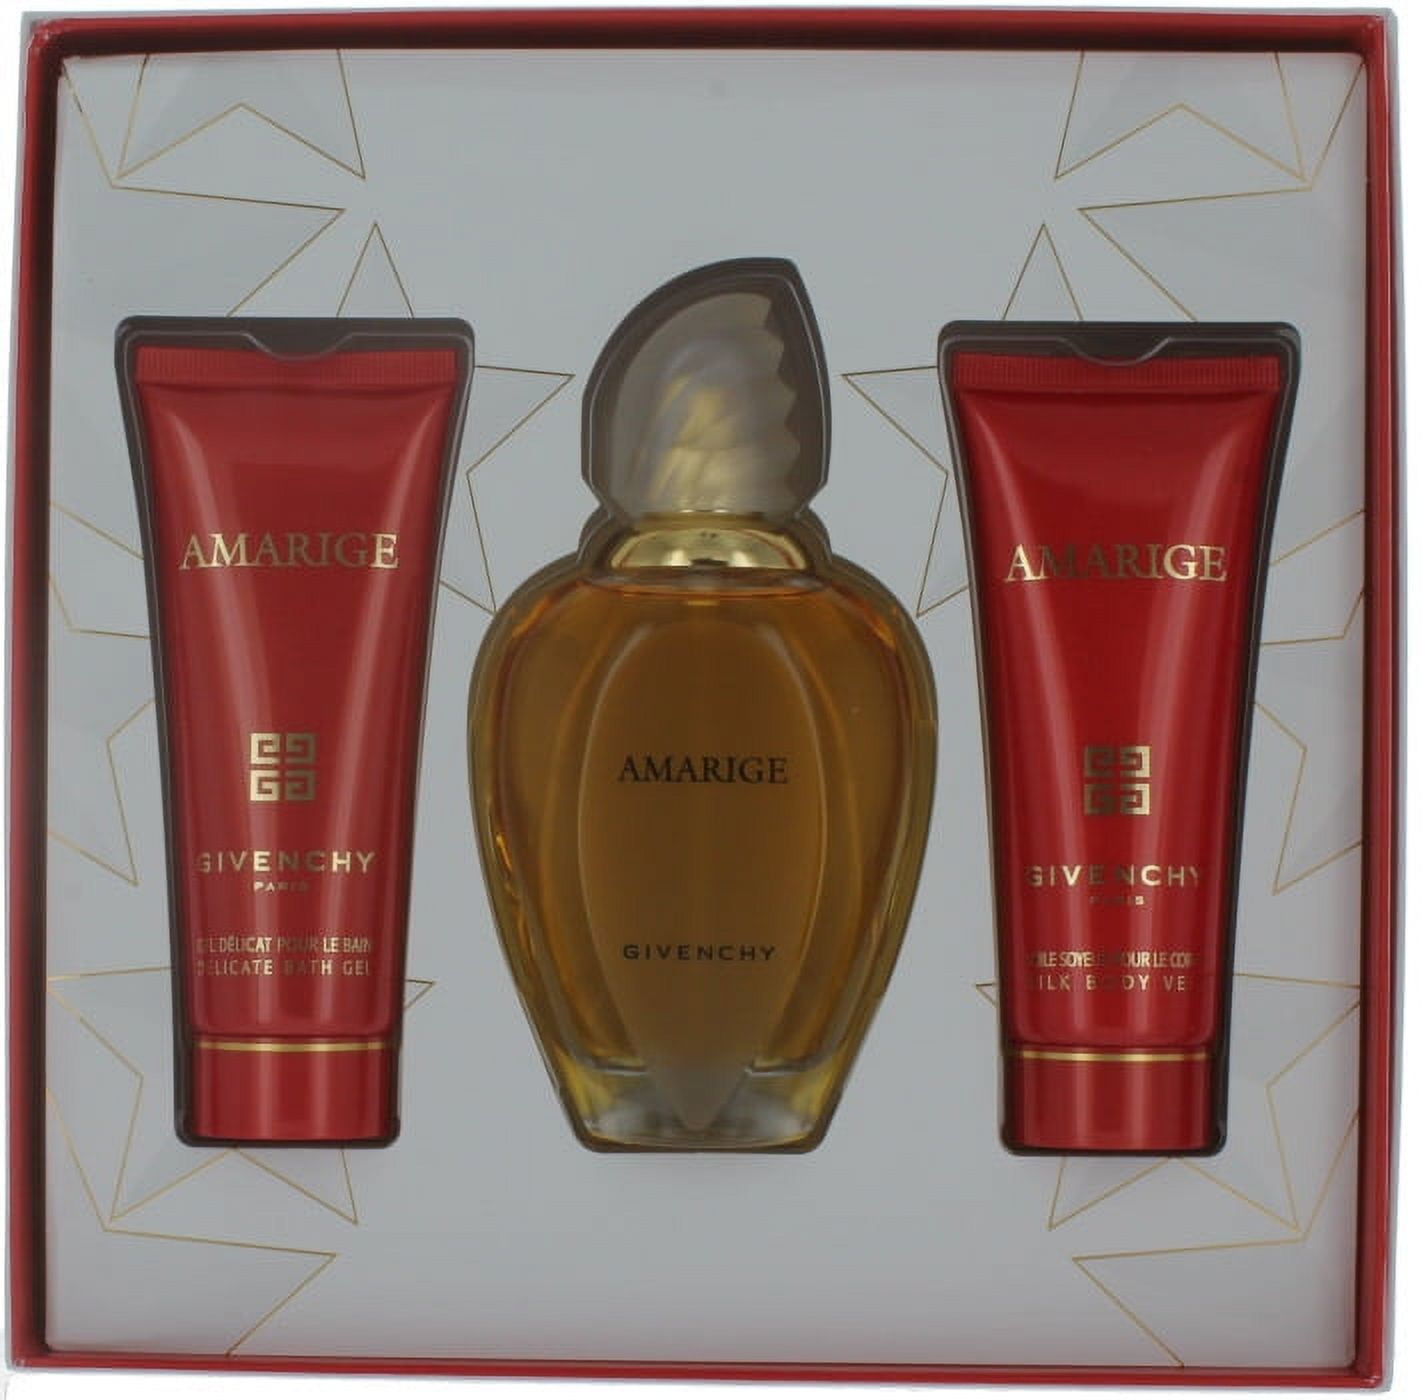 Amarige by Givenchy for Women Set-EDP Perfume Spray 3.4 oz.+Body Veil 2.5  oz. + Bath Gel 2.5 oz. New in Box 